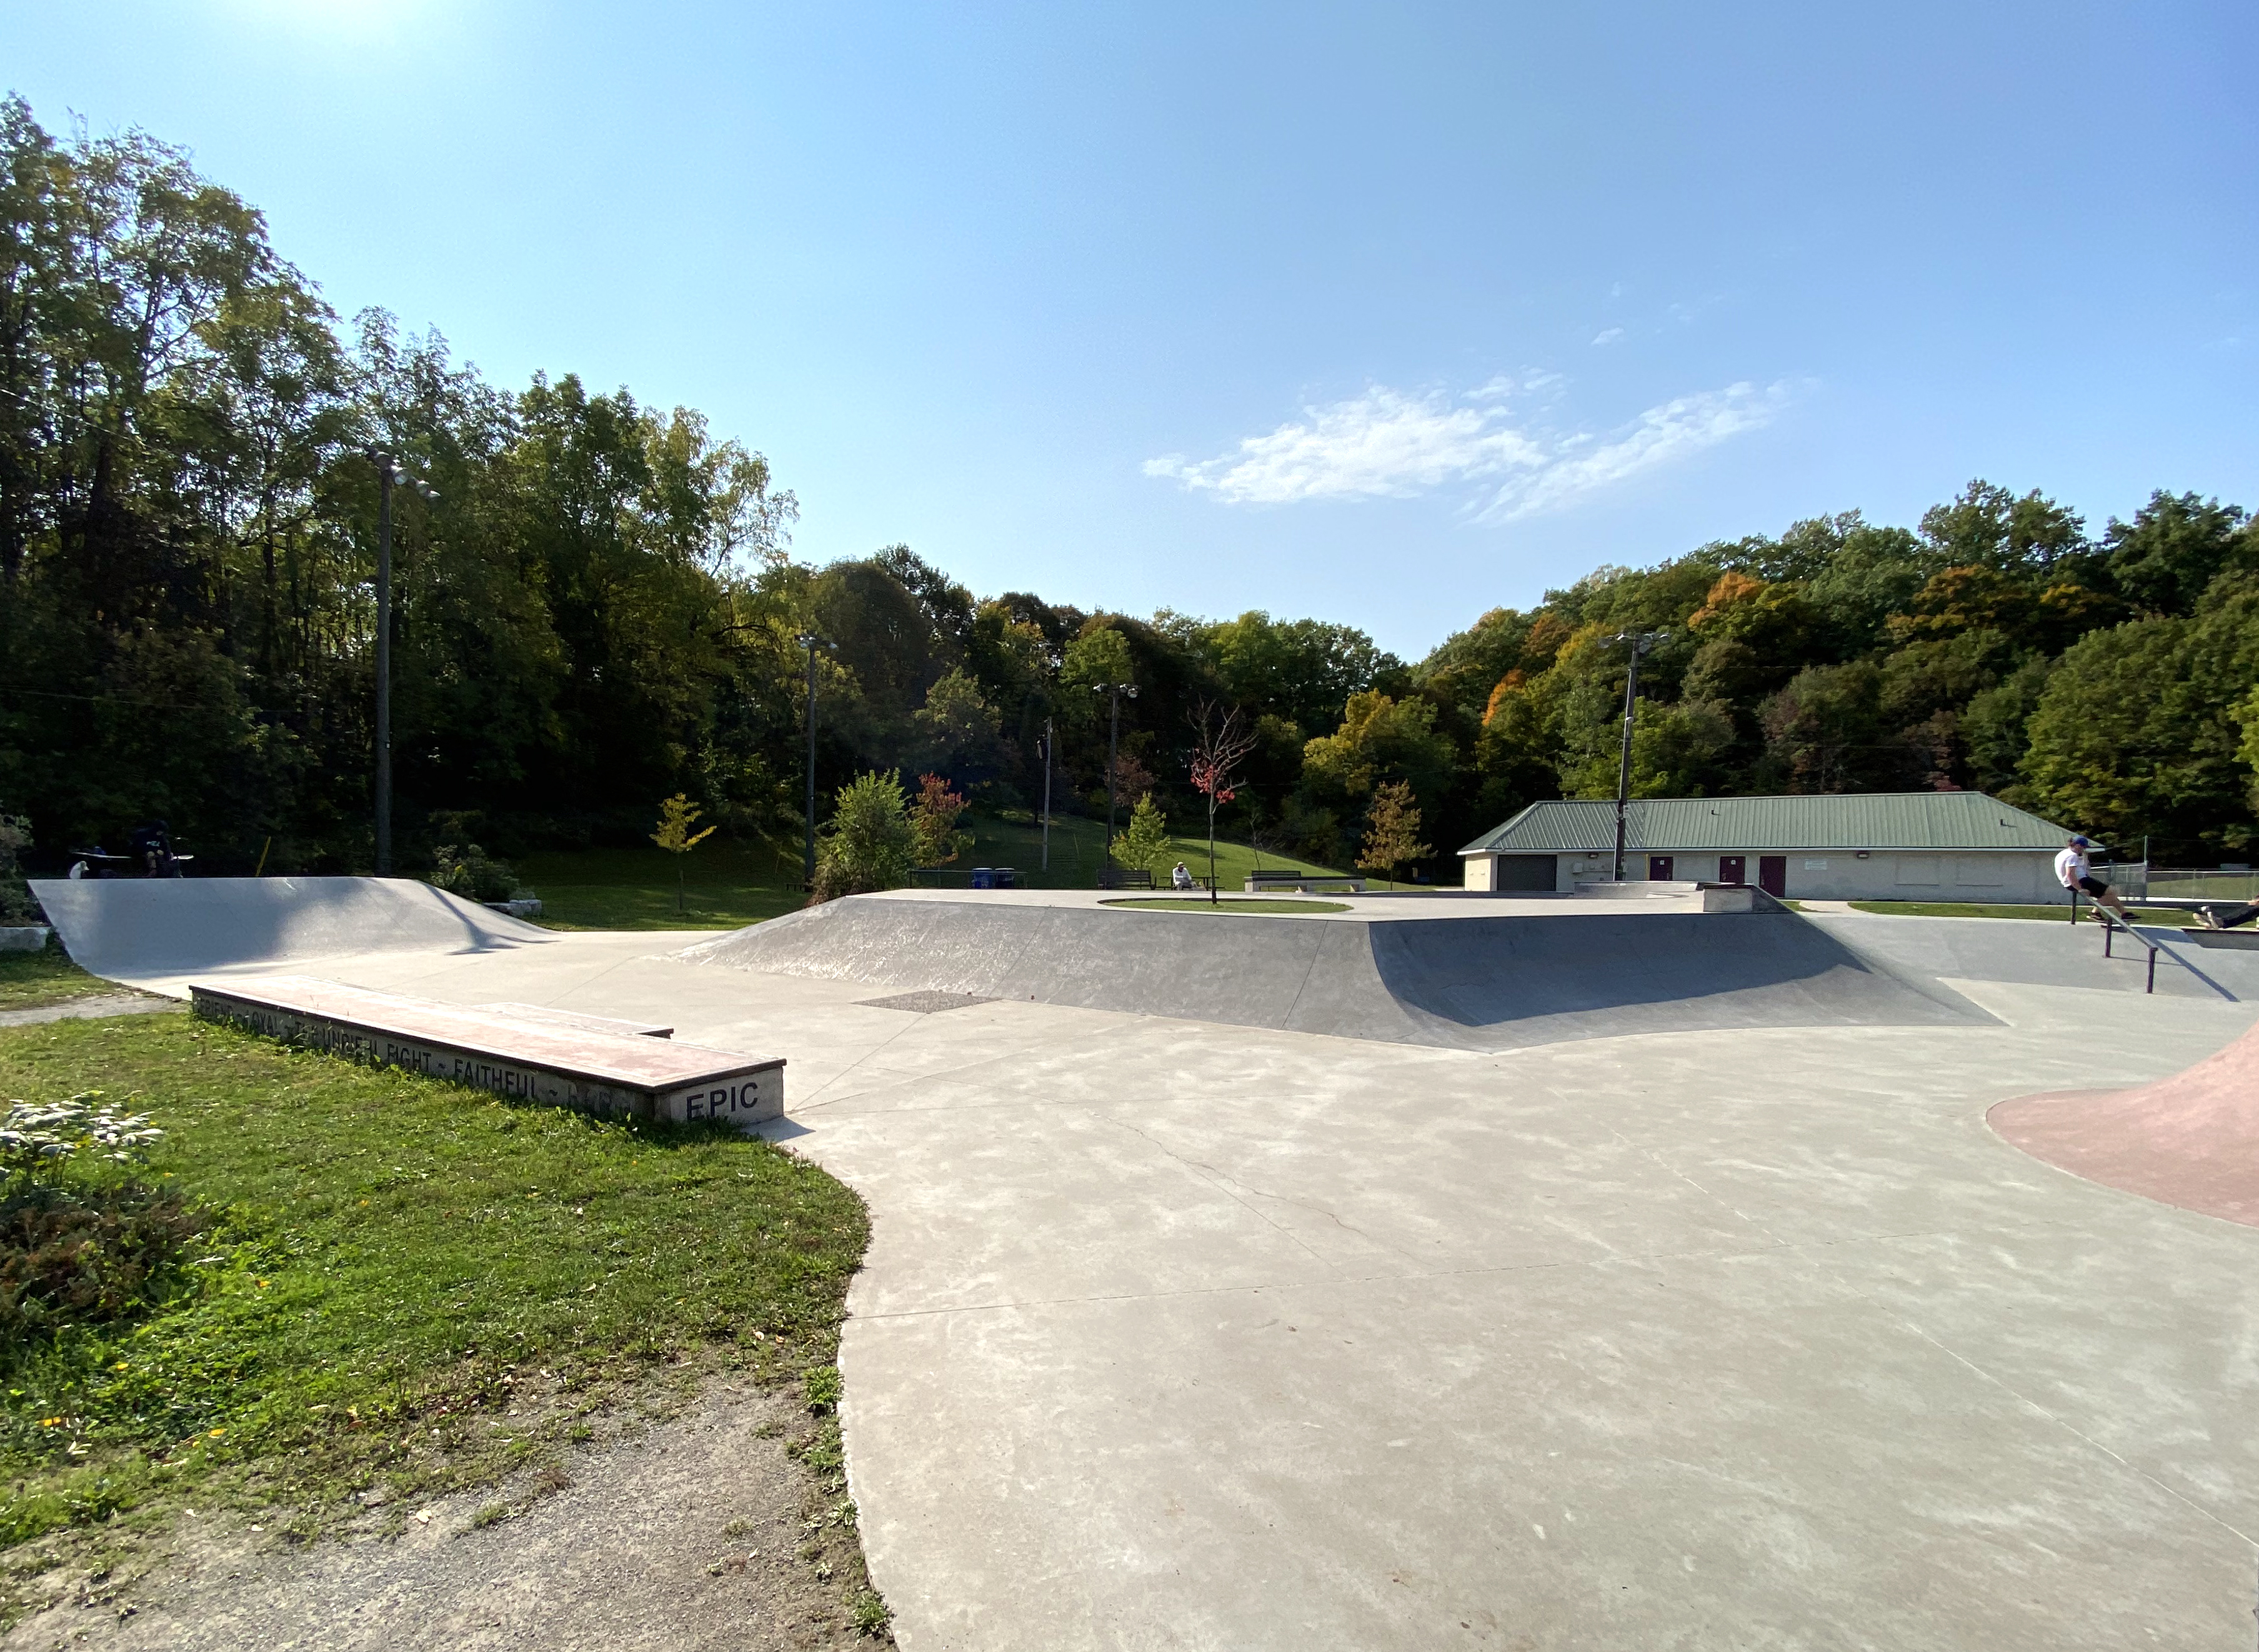 Fonthill skatepark